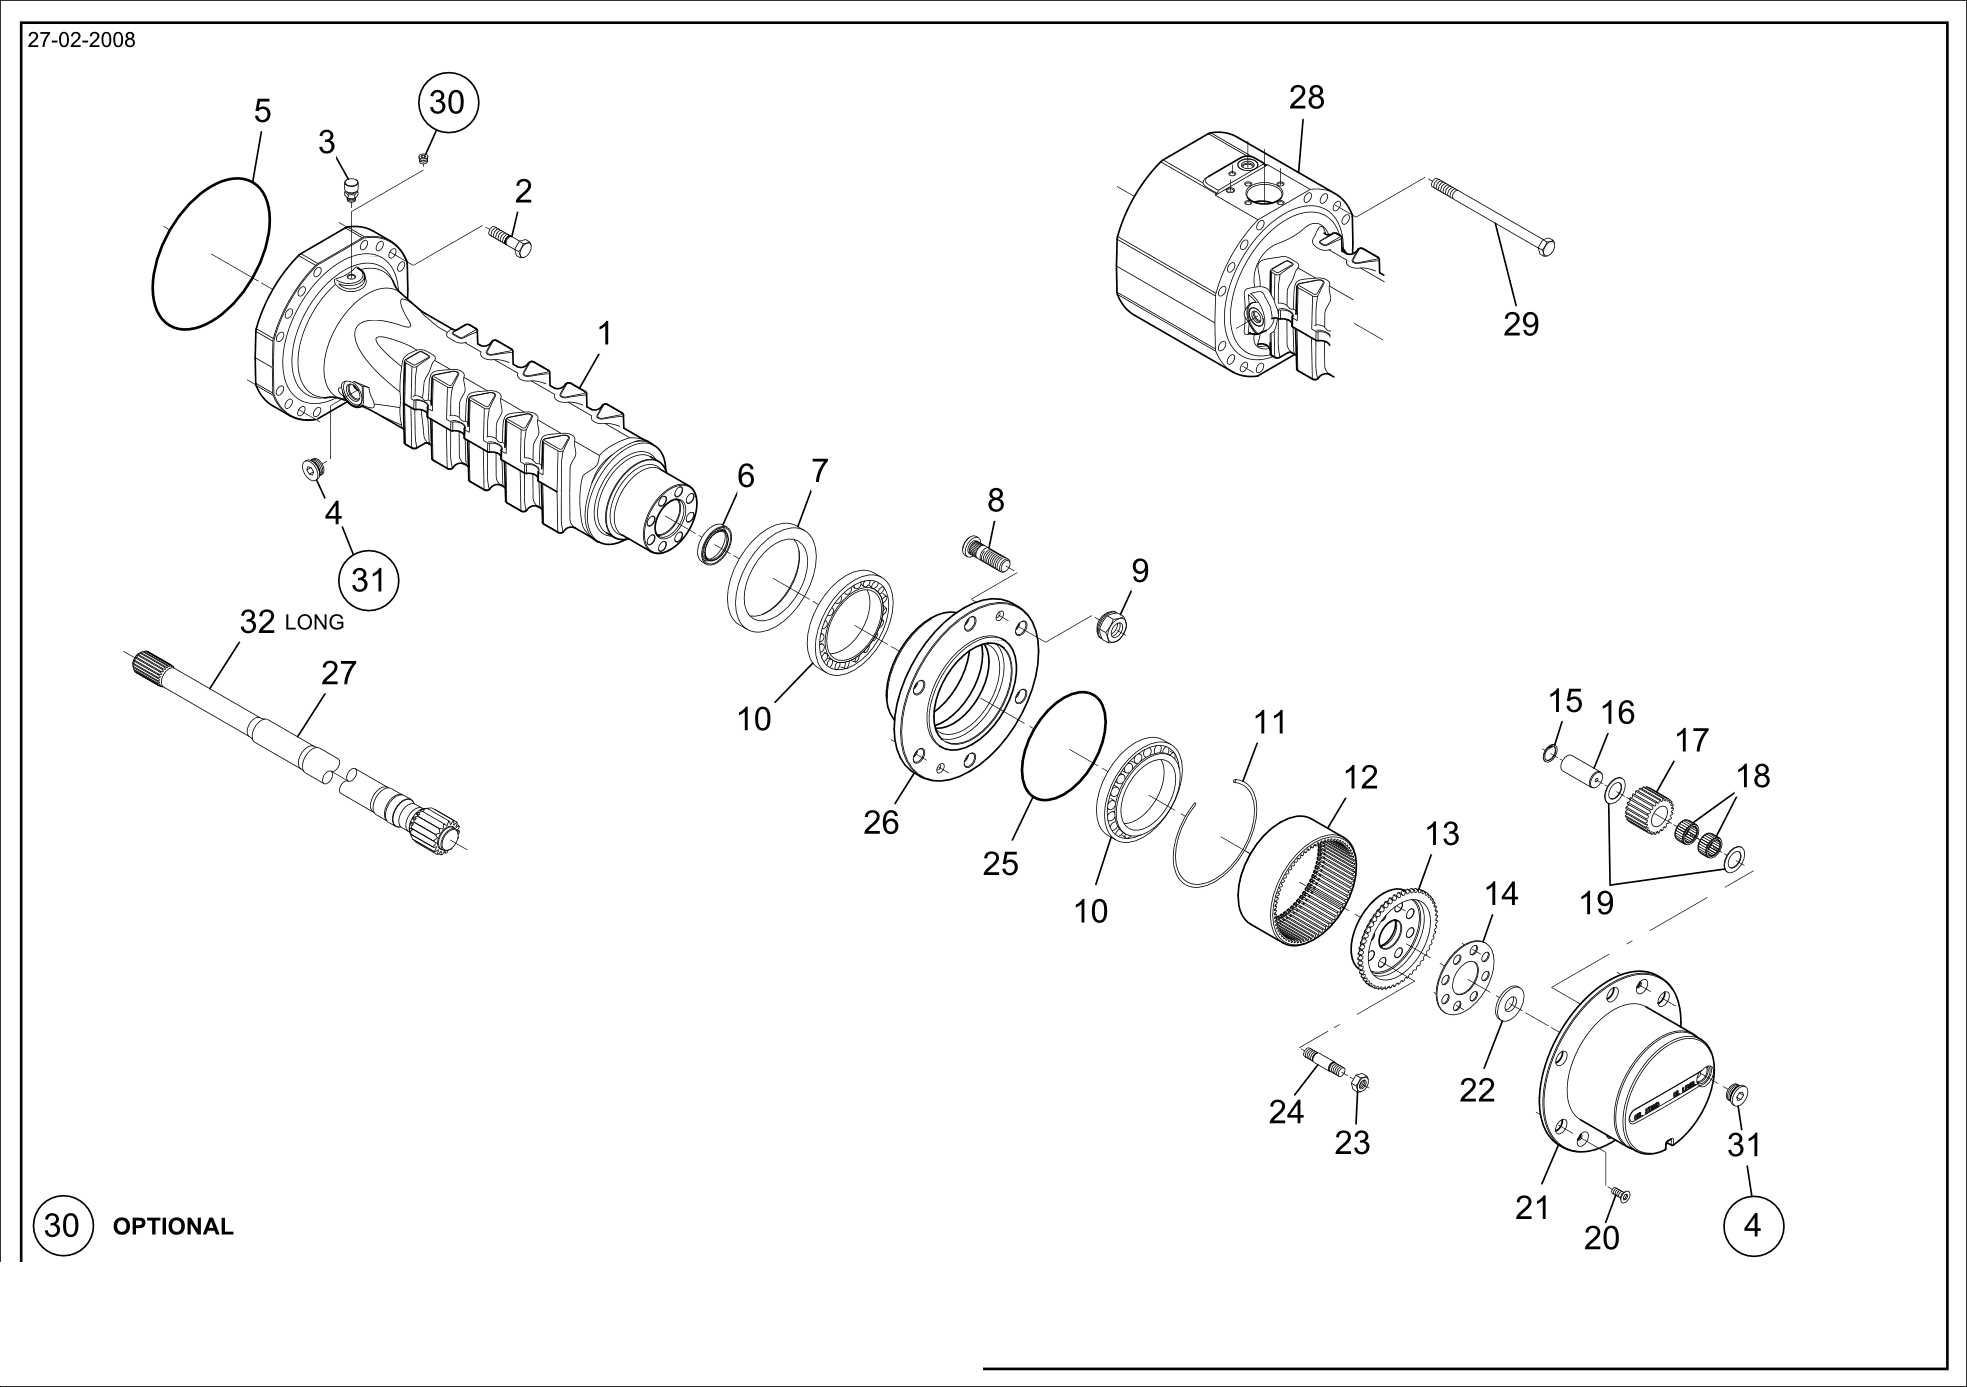 drawing for SCHOPF MASCHINENBAU GMBH 101170 - SHEET